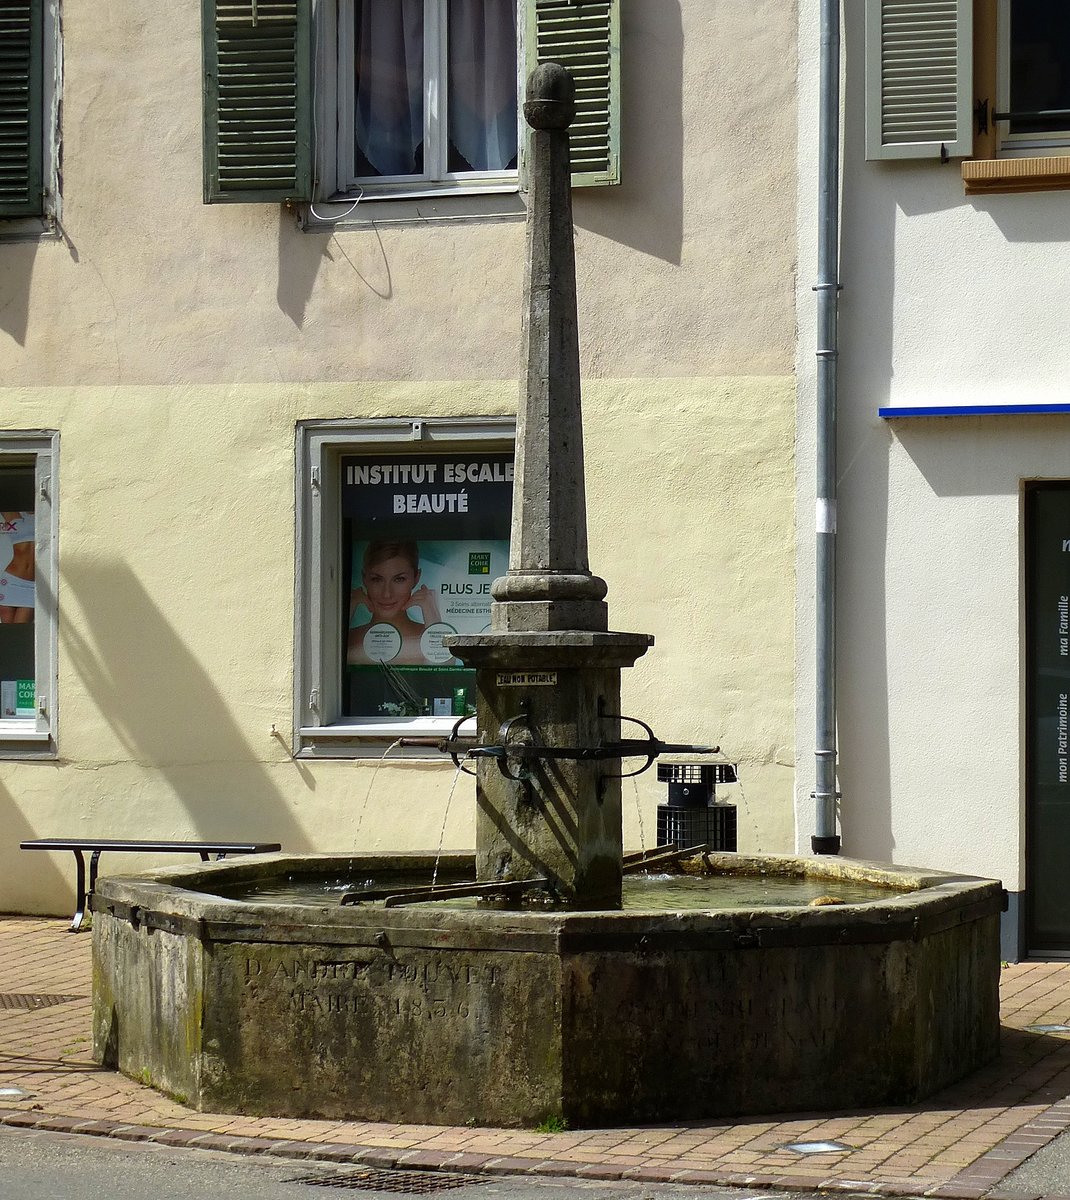 Pfitr (Ferrette), historischer Brunnen im Ortszentrum, Mai 2017